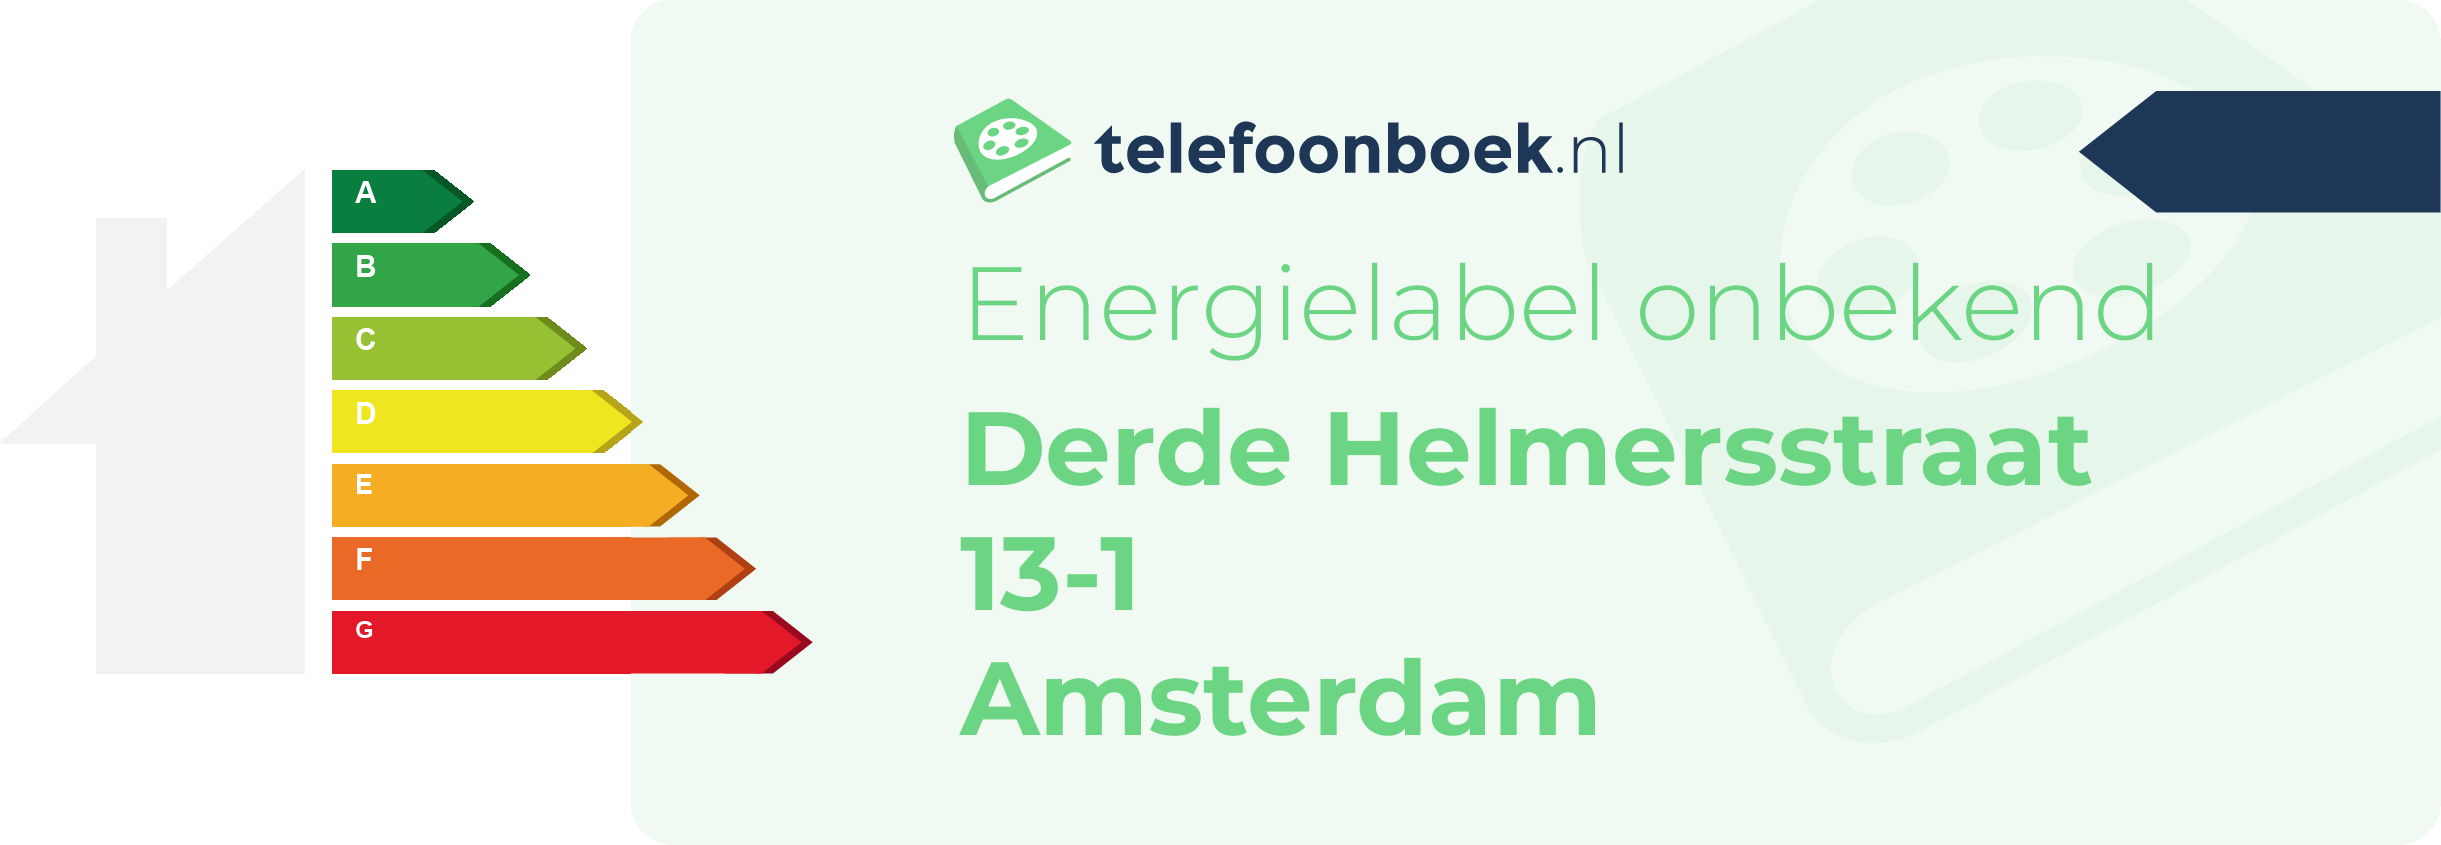 Energielabel Derde Helmersstraat 13-1 Amsterdam